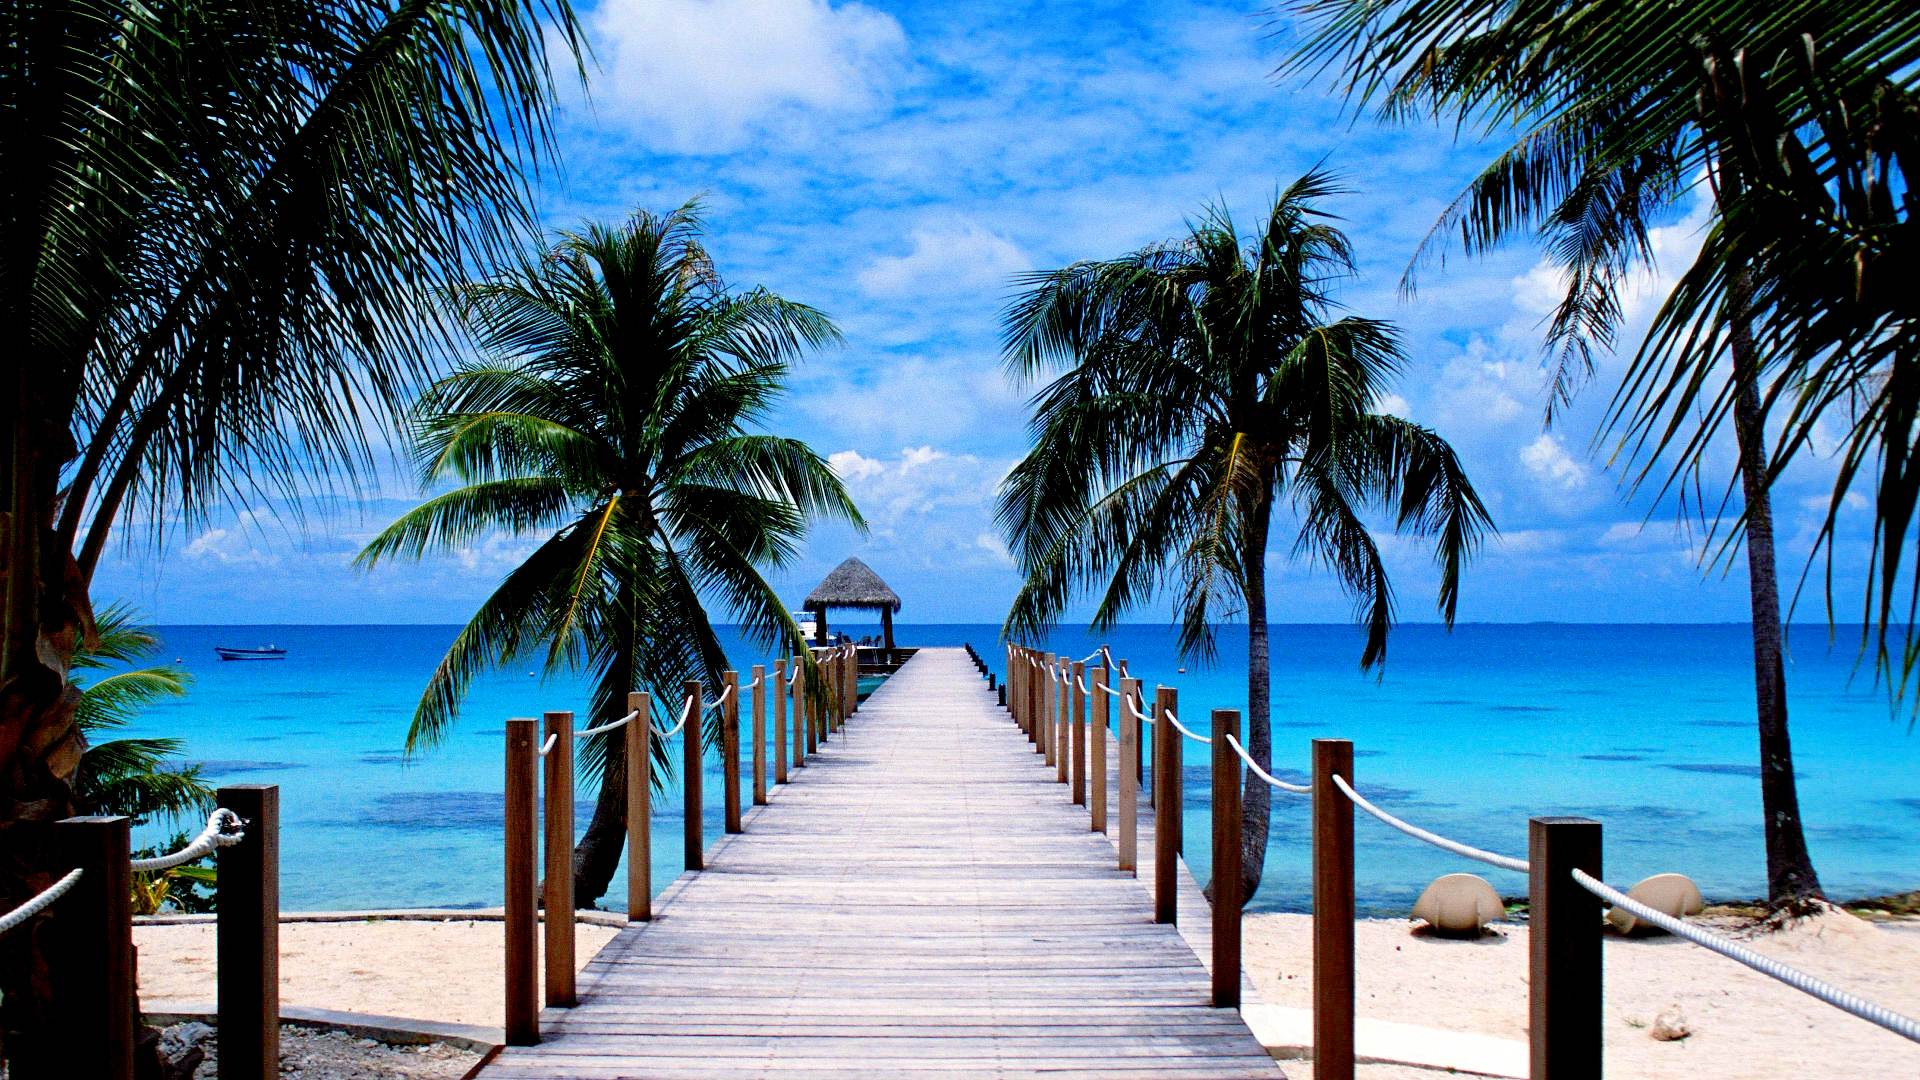 Лучшие обои фото на телефон. Гавайи Багамы. Доминикана Лазурный берег. Канары, Карибы, Мальдивы, Сейшелы.. Парадиз остров Карибского моря.